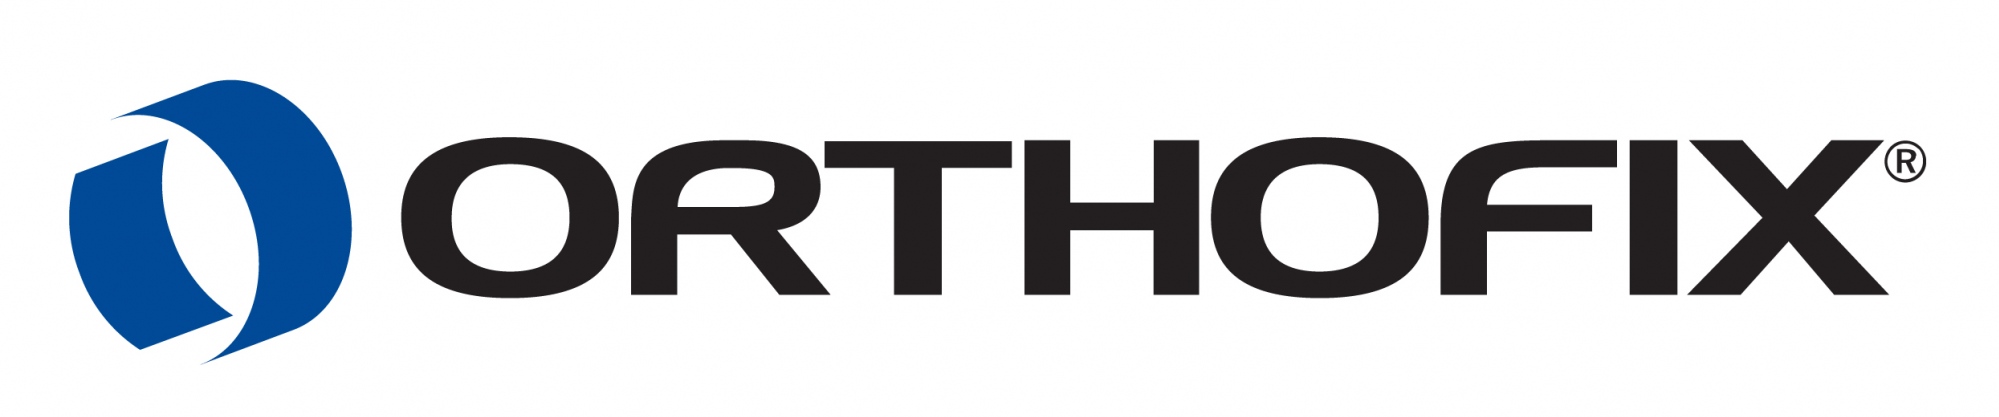 Orthofix Logo